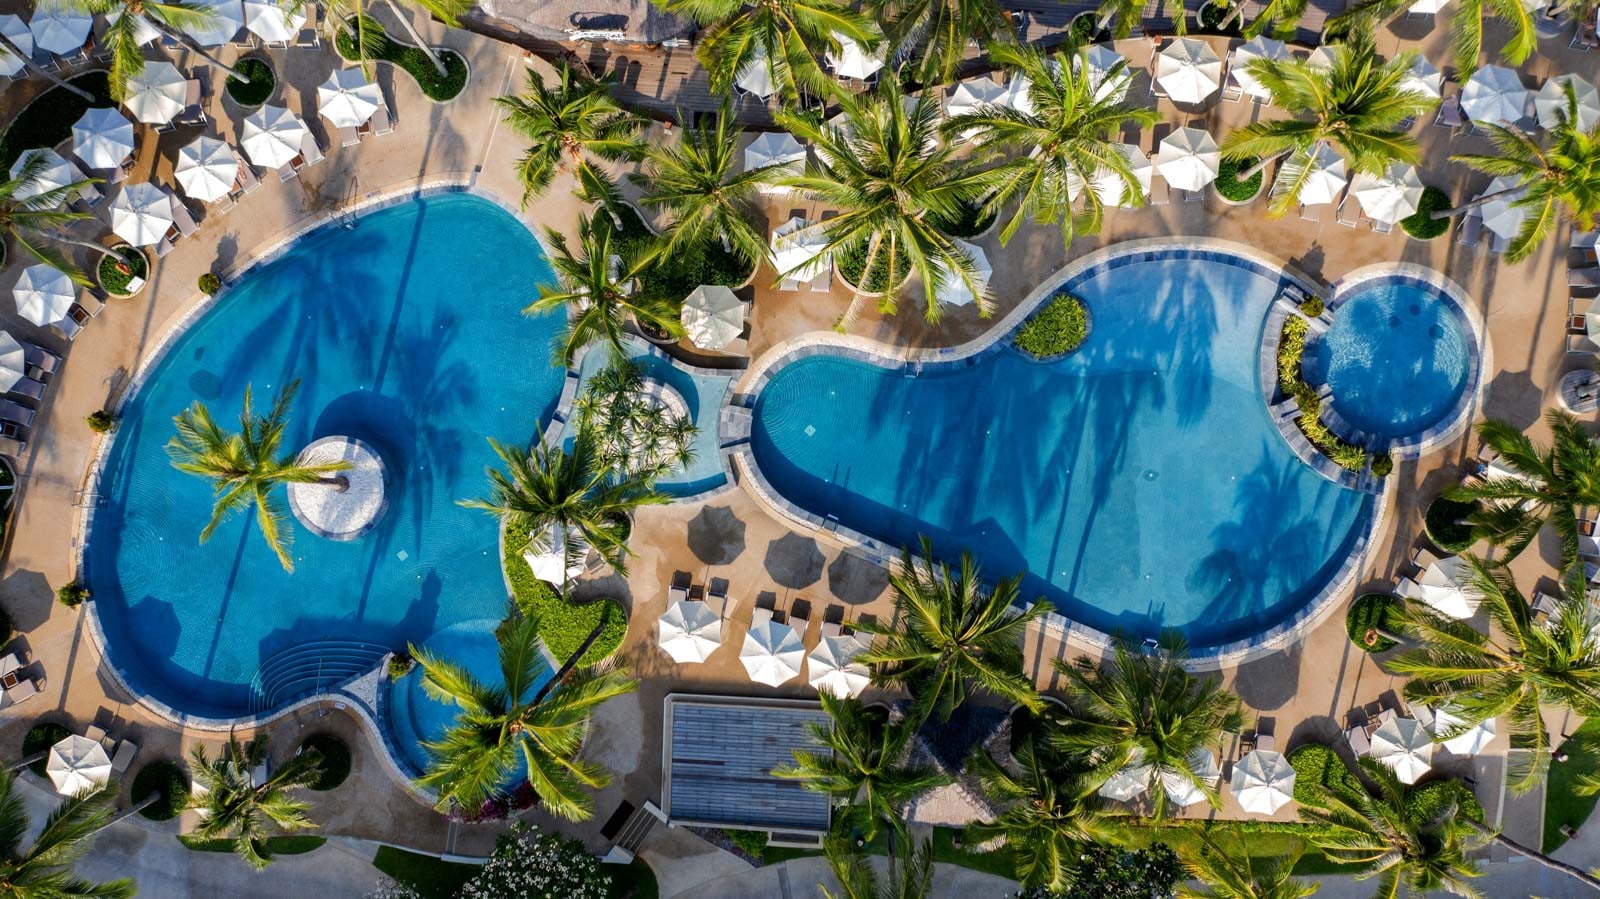 Aerial View of the Katathani Beach Resort in Phuket